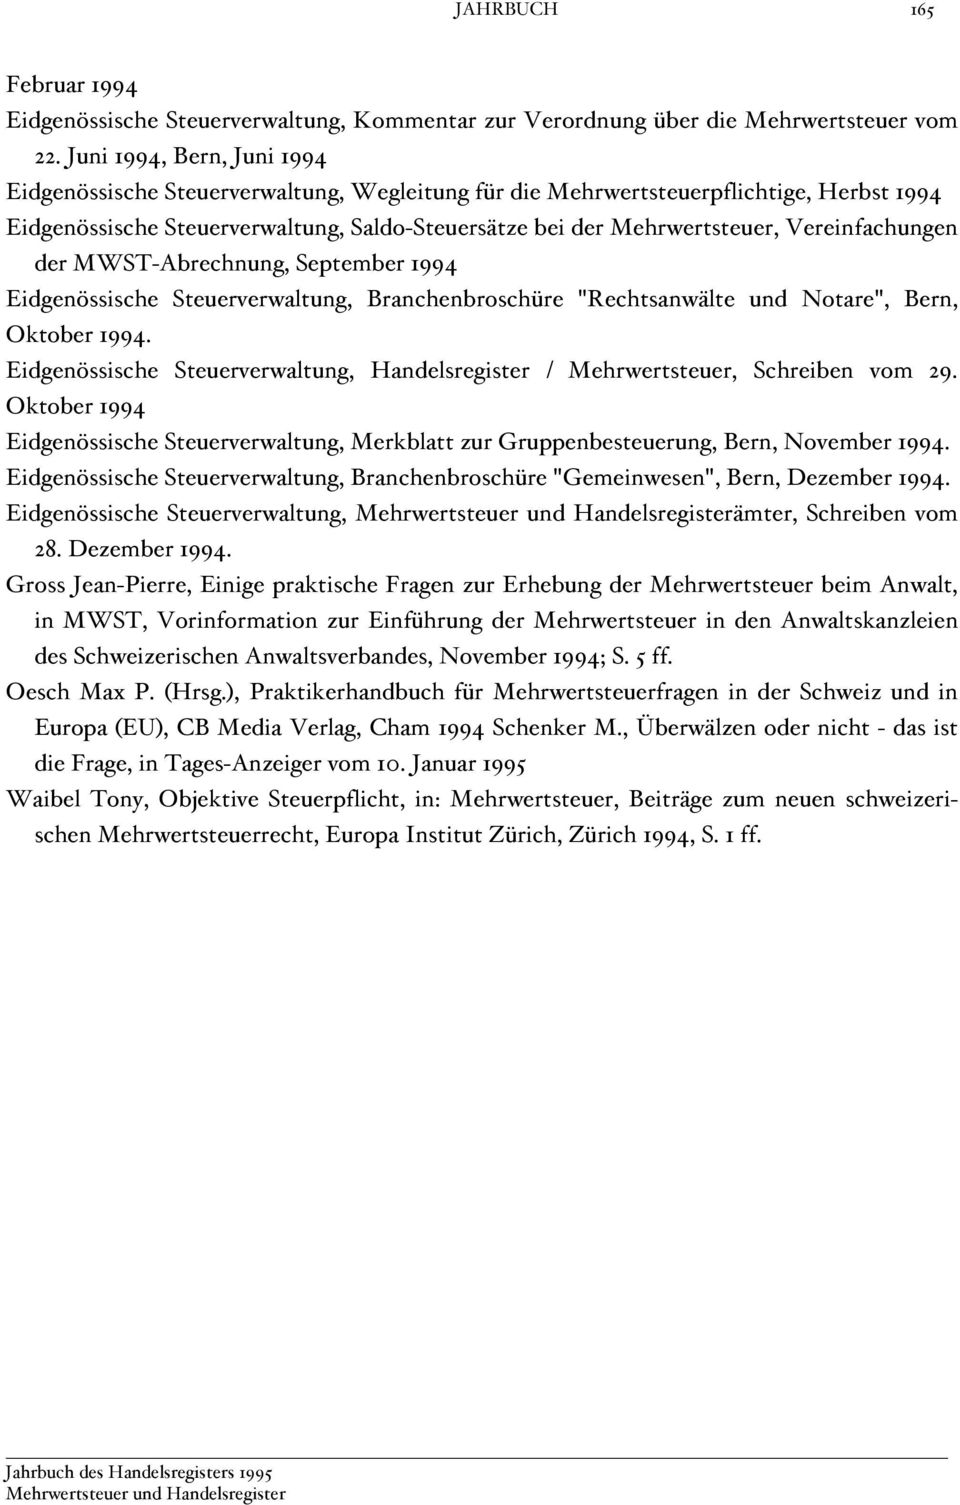 Vereinfachungen der MWST-Abrechnung, September 1994 Eidgenössische Steuerverwaltung, Branchenbroschüre "Rechtsanwälte und Notare", Bern, Oktober 1994.